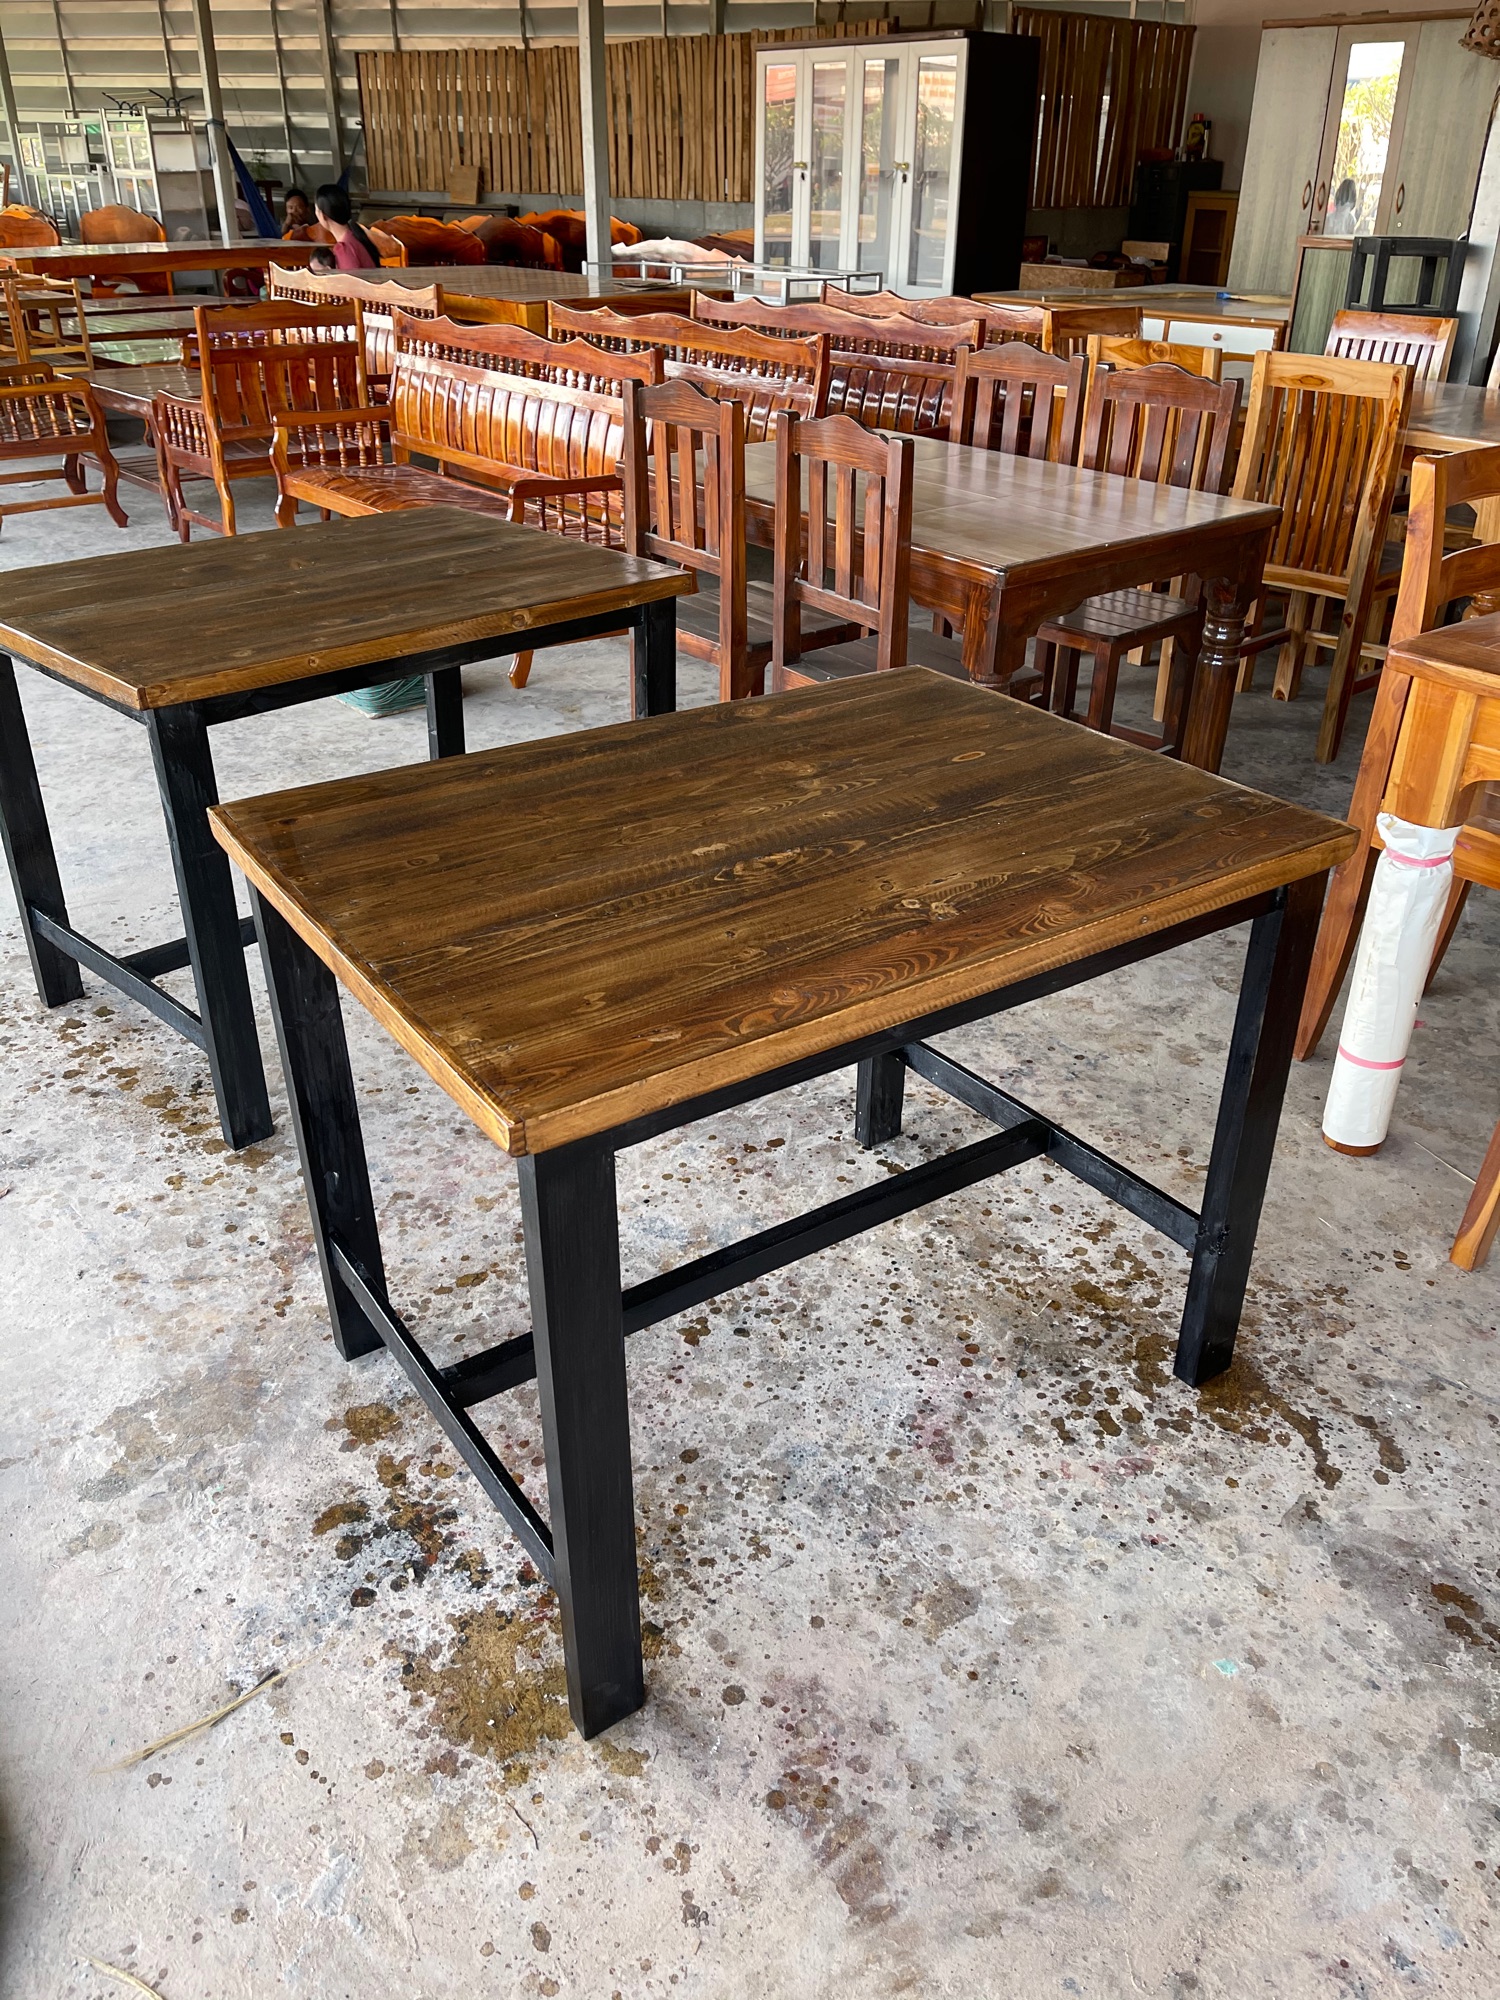 โต๊ะไม้พาเลท (เฉพาะโต๊ะ) งานขาไม้ทาสีดำ ขนาด 75*100*75 ซม.